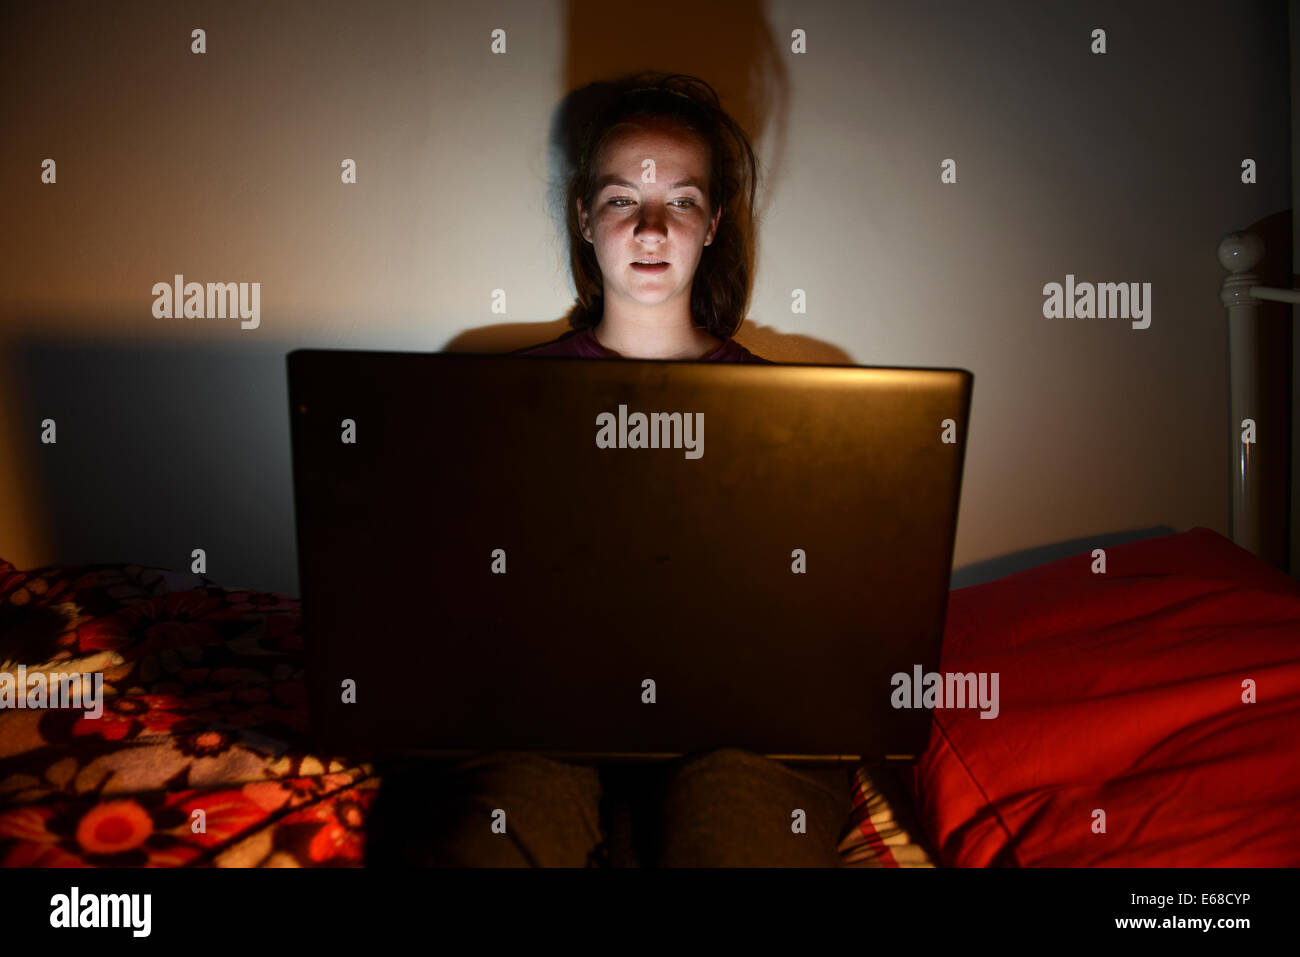 Ordinateur portable ordinateur utilisé par un enfant dans sa chambre à coucher, adolescente à l'aide d'un ordinateur portable seul dans sa chambre Banque D'Images